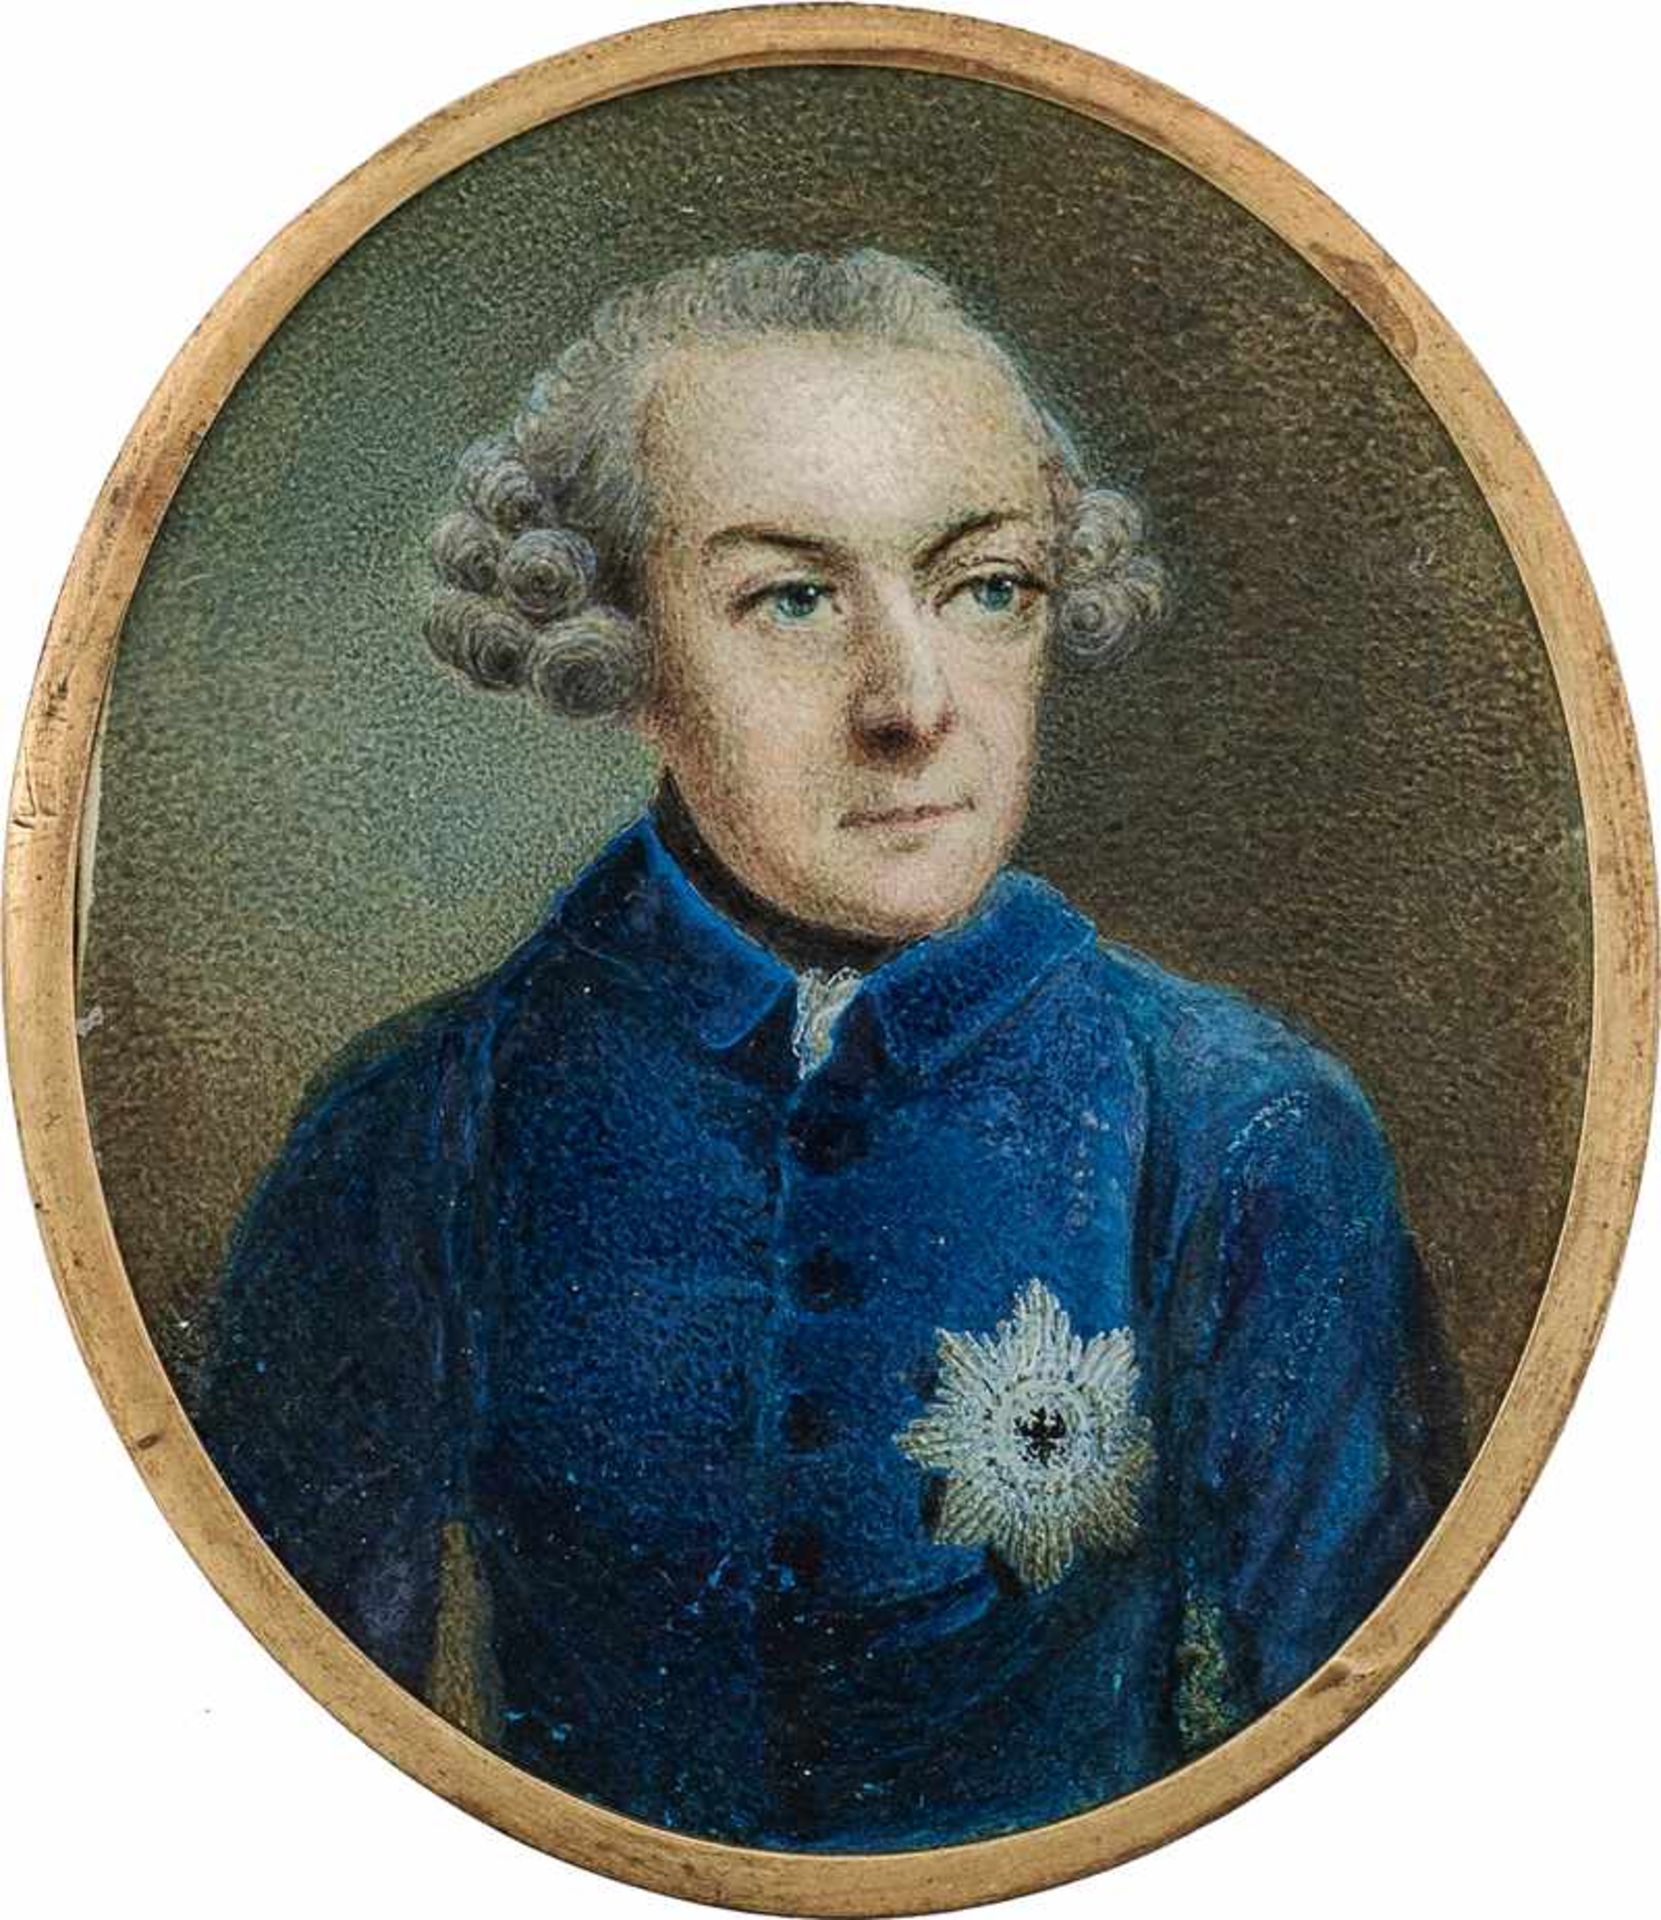 Preußisch: um 1765/1770. Miniatur Portrait des Königs Friedrich II. von Preußen in blauer Unif